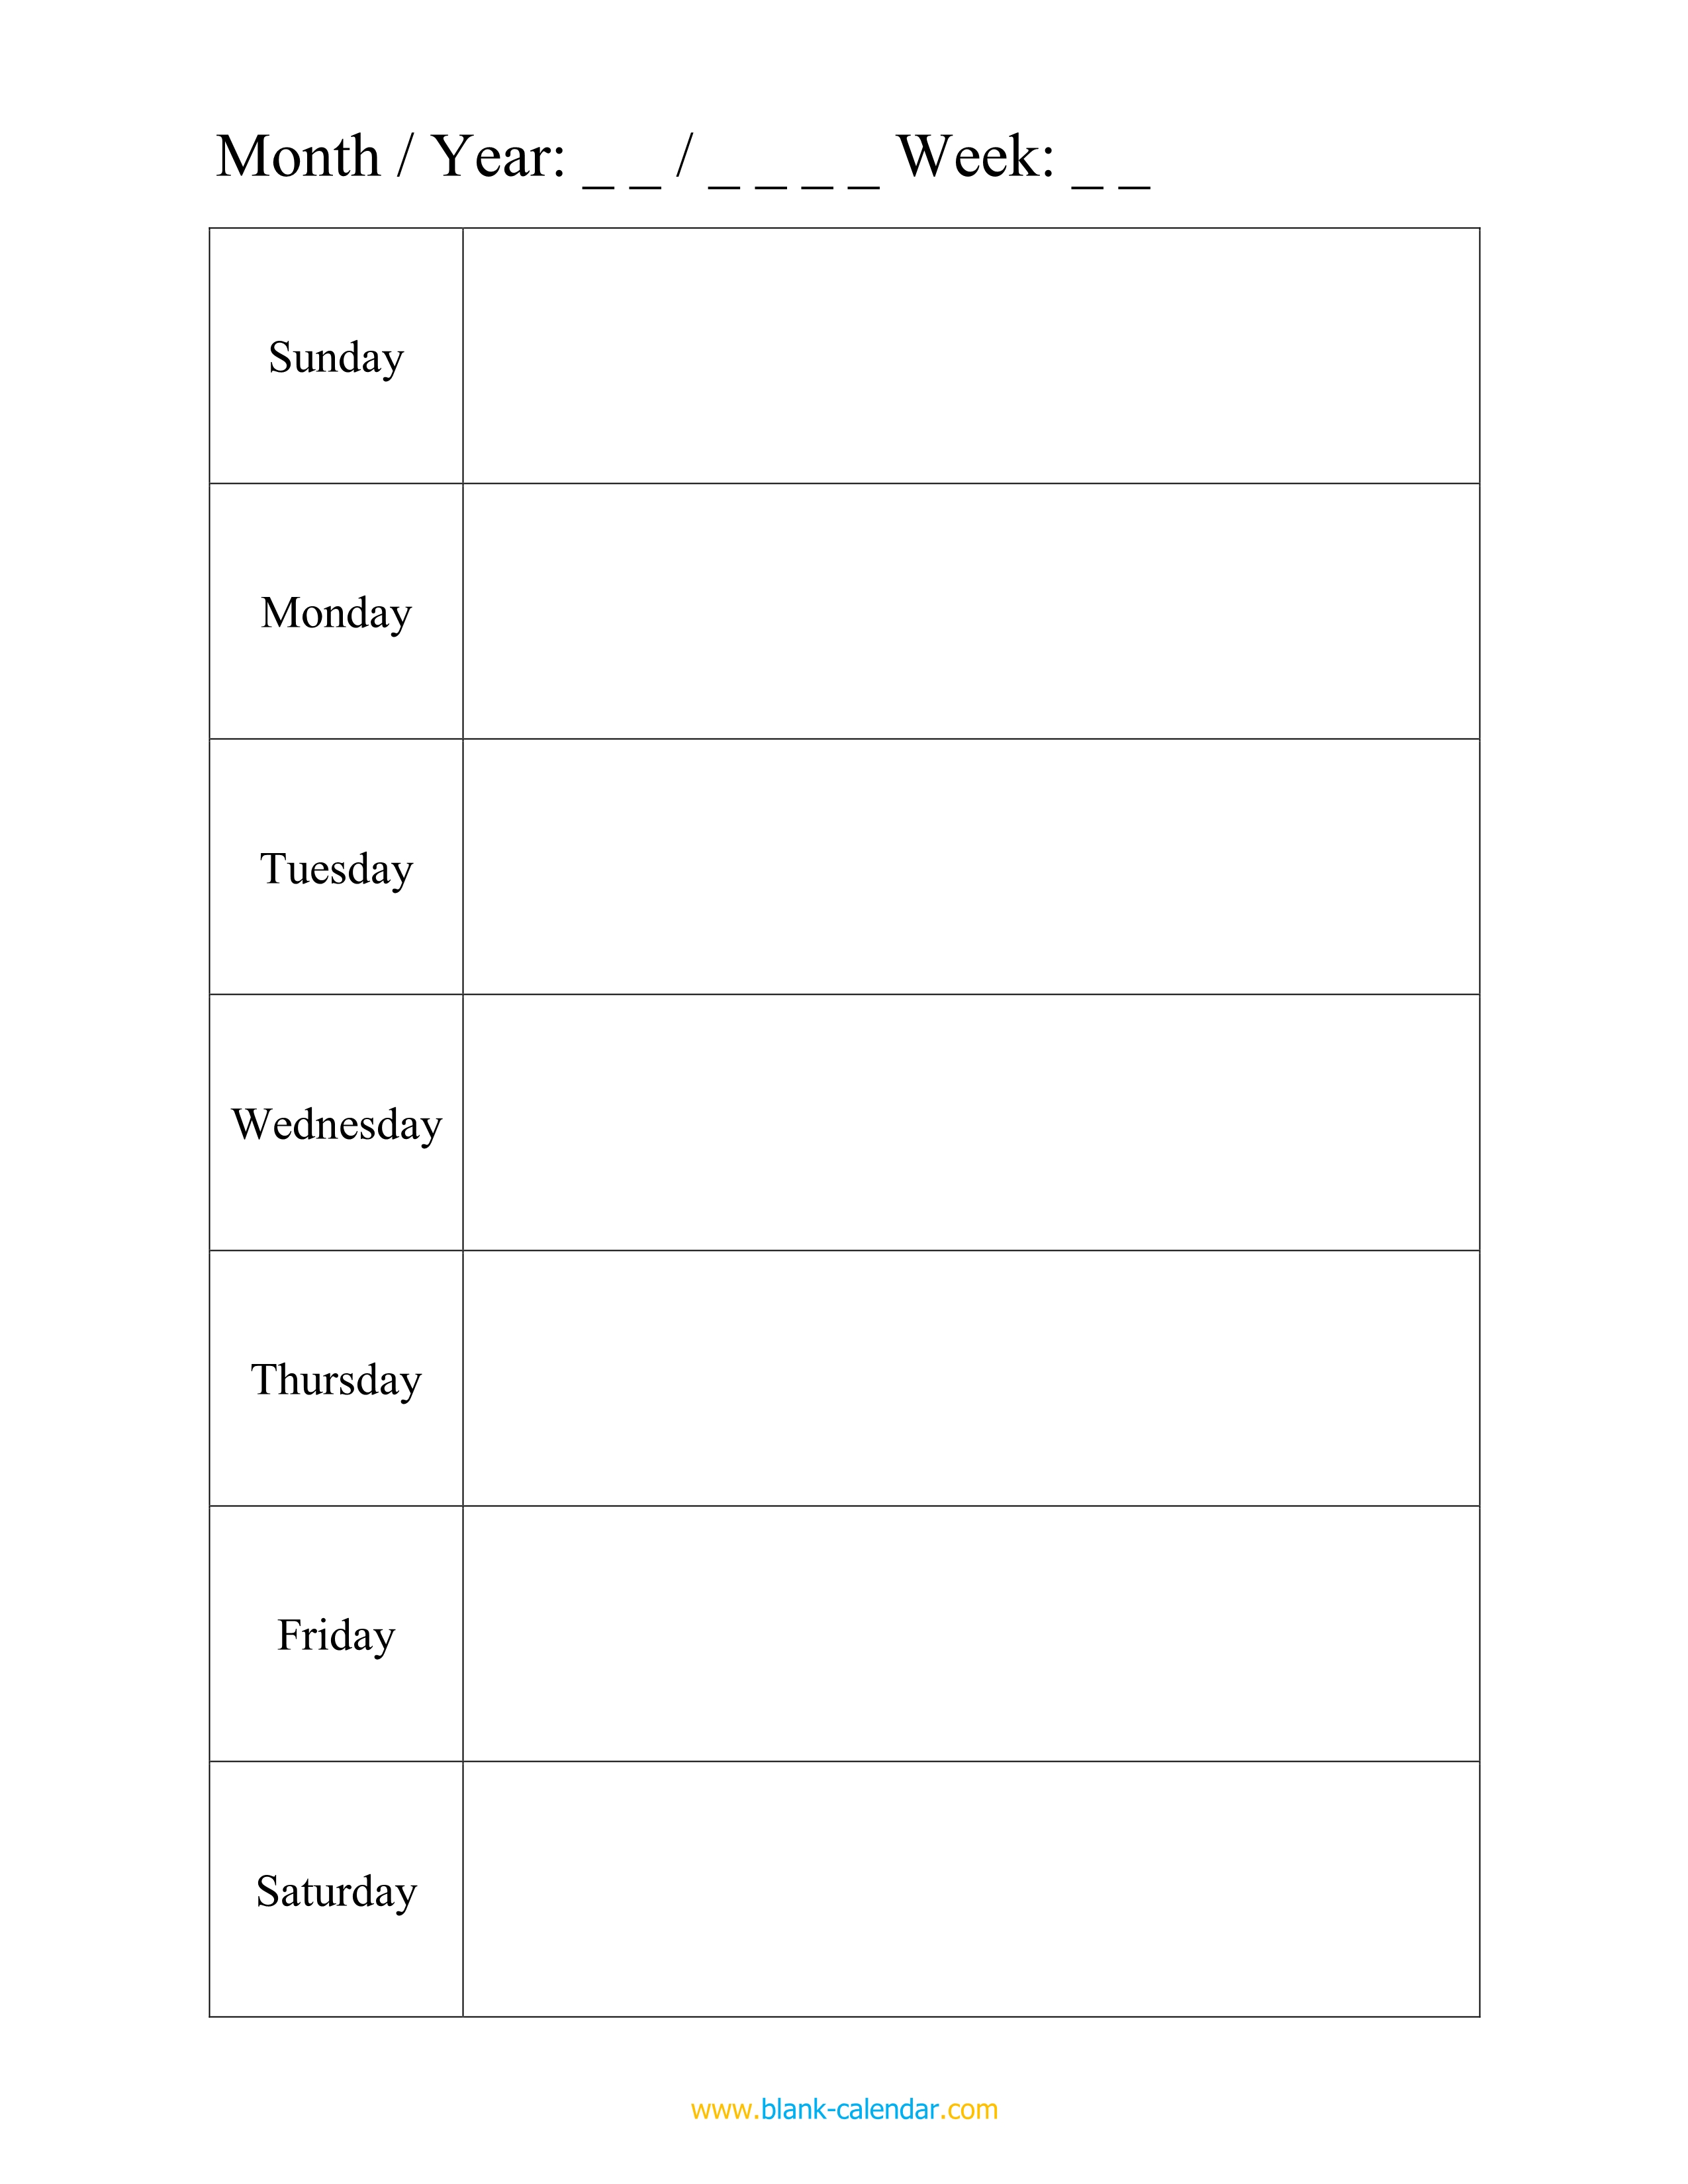 printable weekly work schedule template